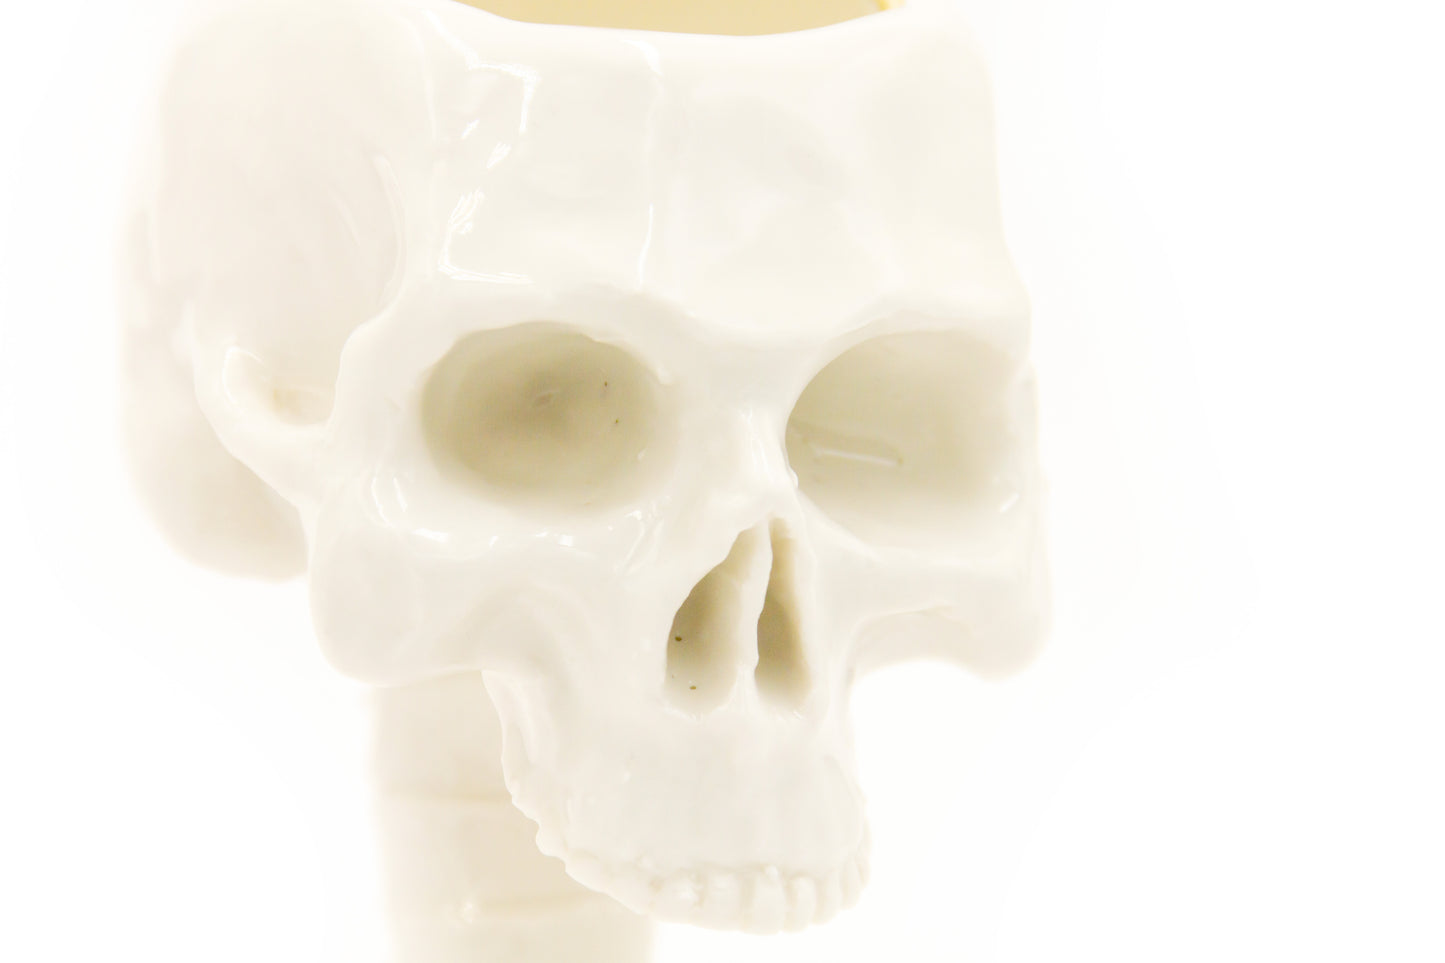 Puchar porcelanowy w kształcie czaszki z kręgosłupem